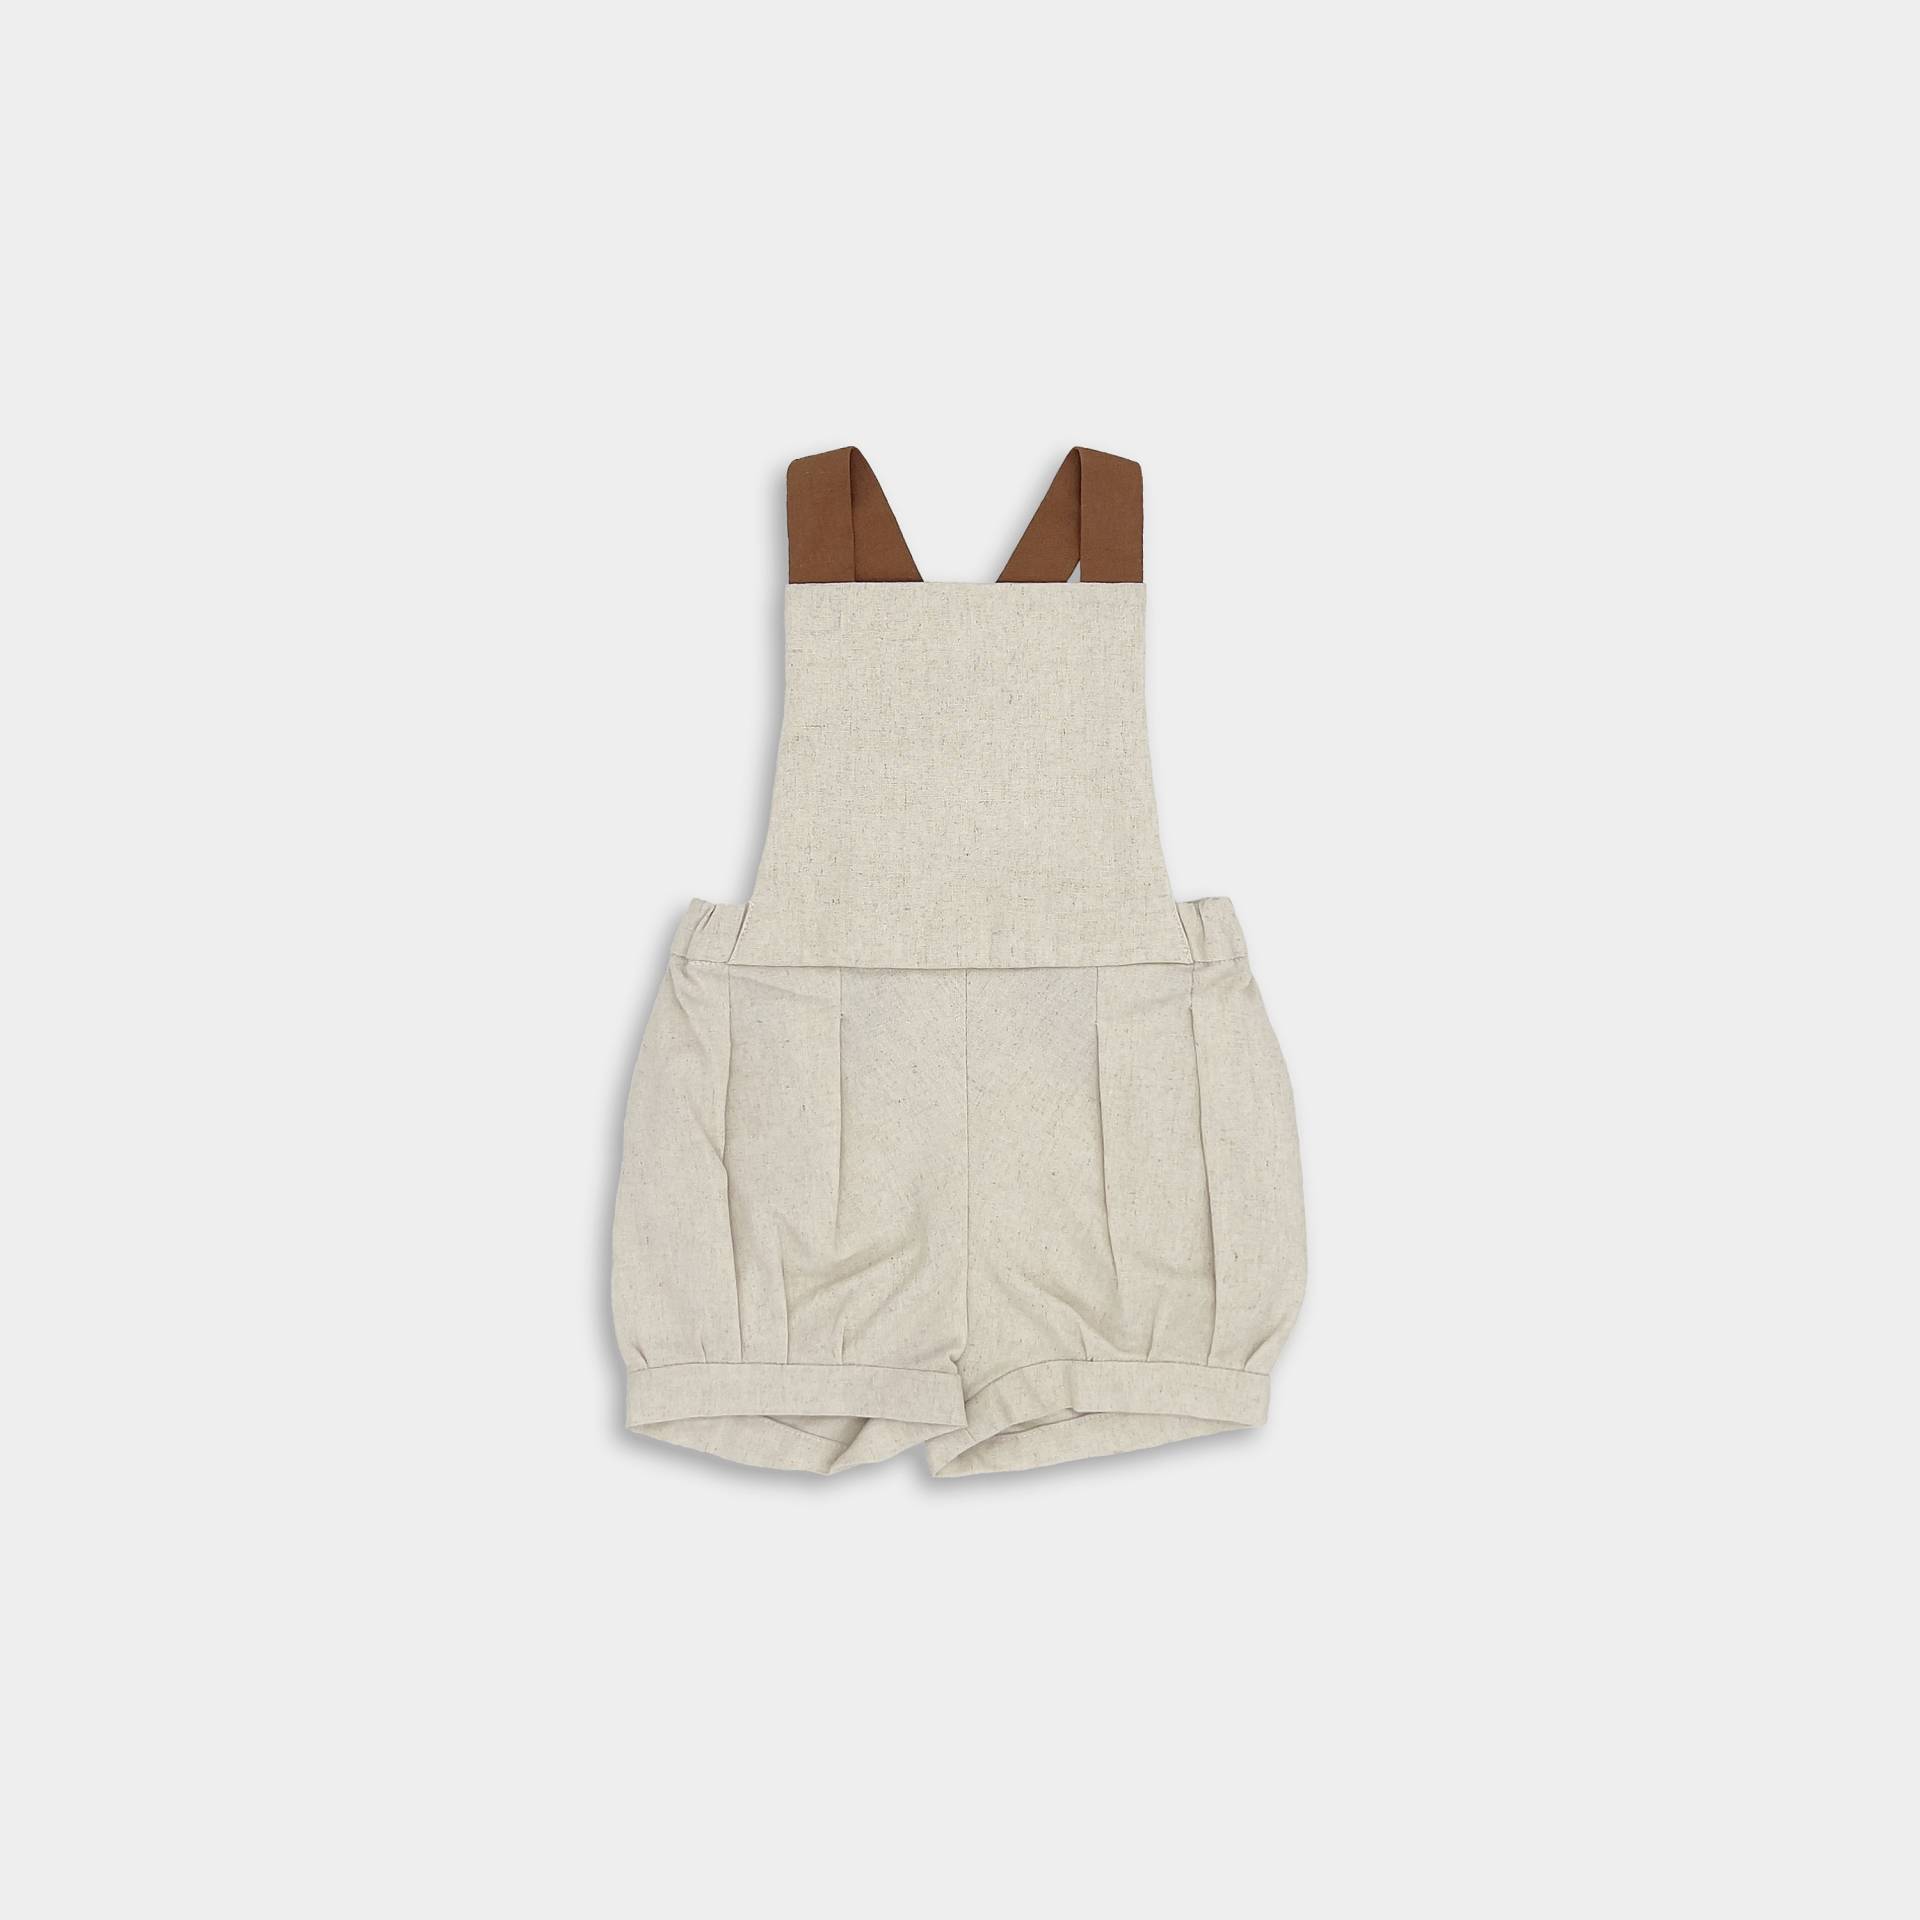 Natürlicher Leinen Overall/Frühlings Kleinkind Outfit Baby Boy Strampler Rustikaler Retro Vintage Kurze Hose von LilliesDreamByLuthea